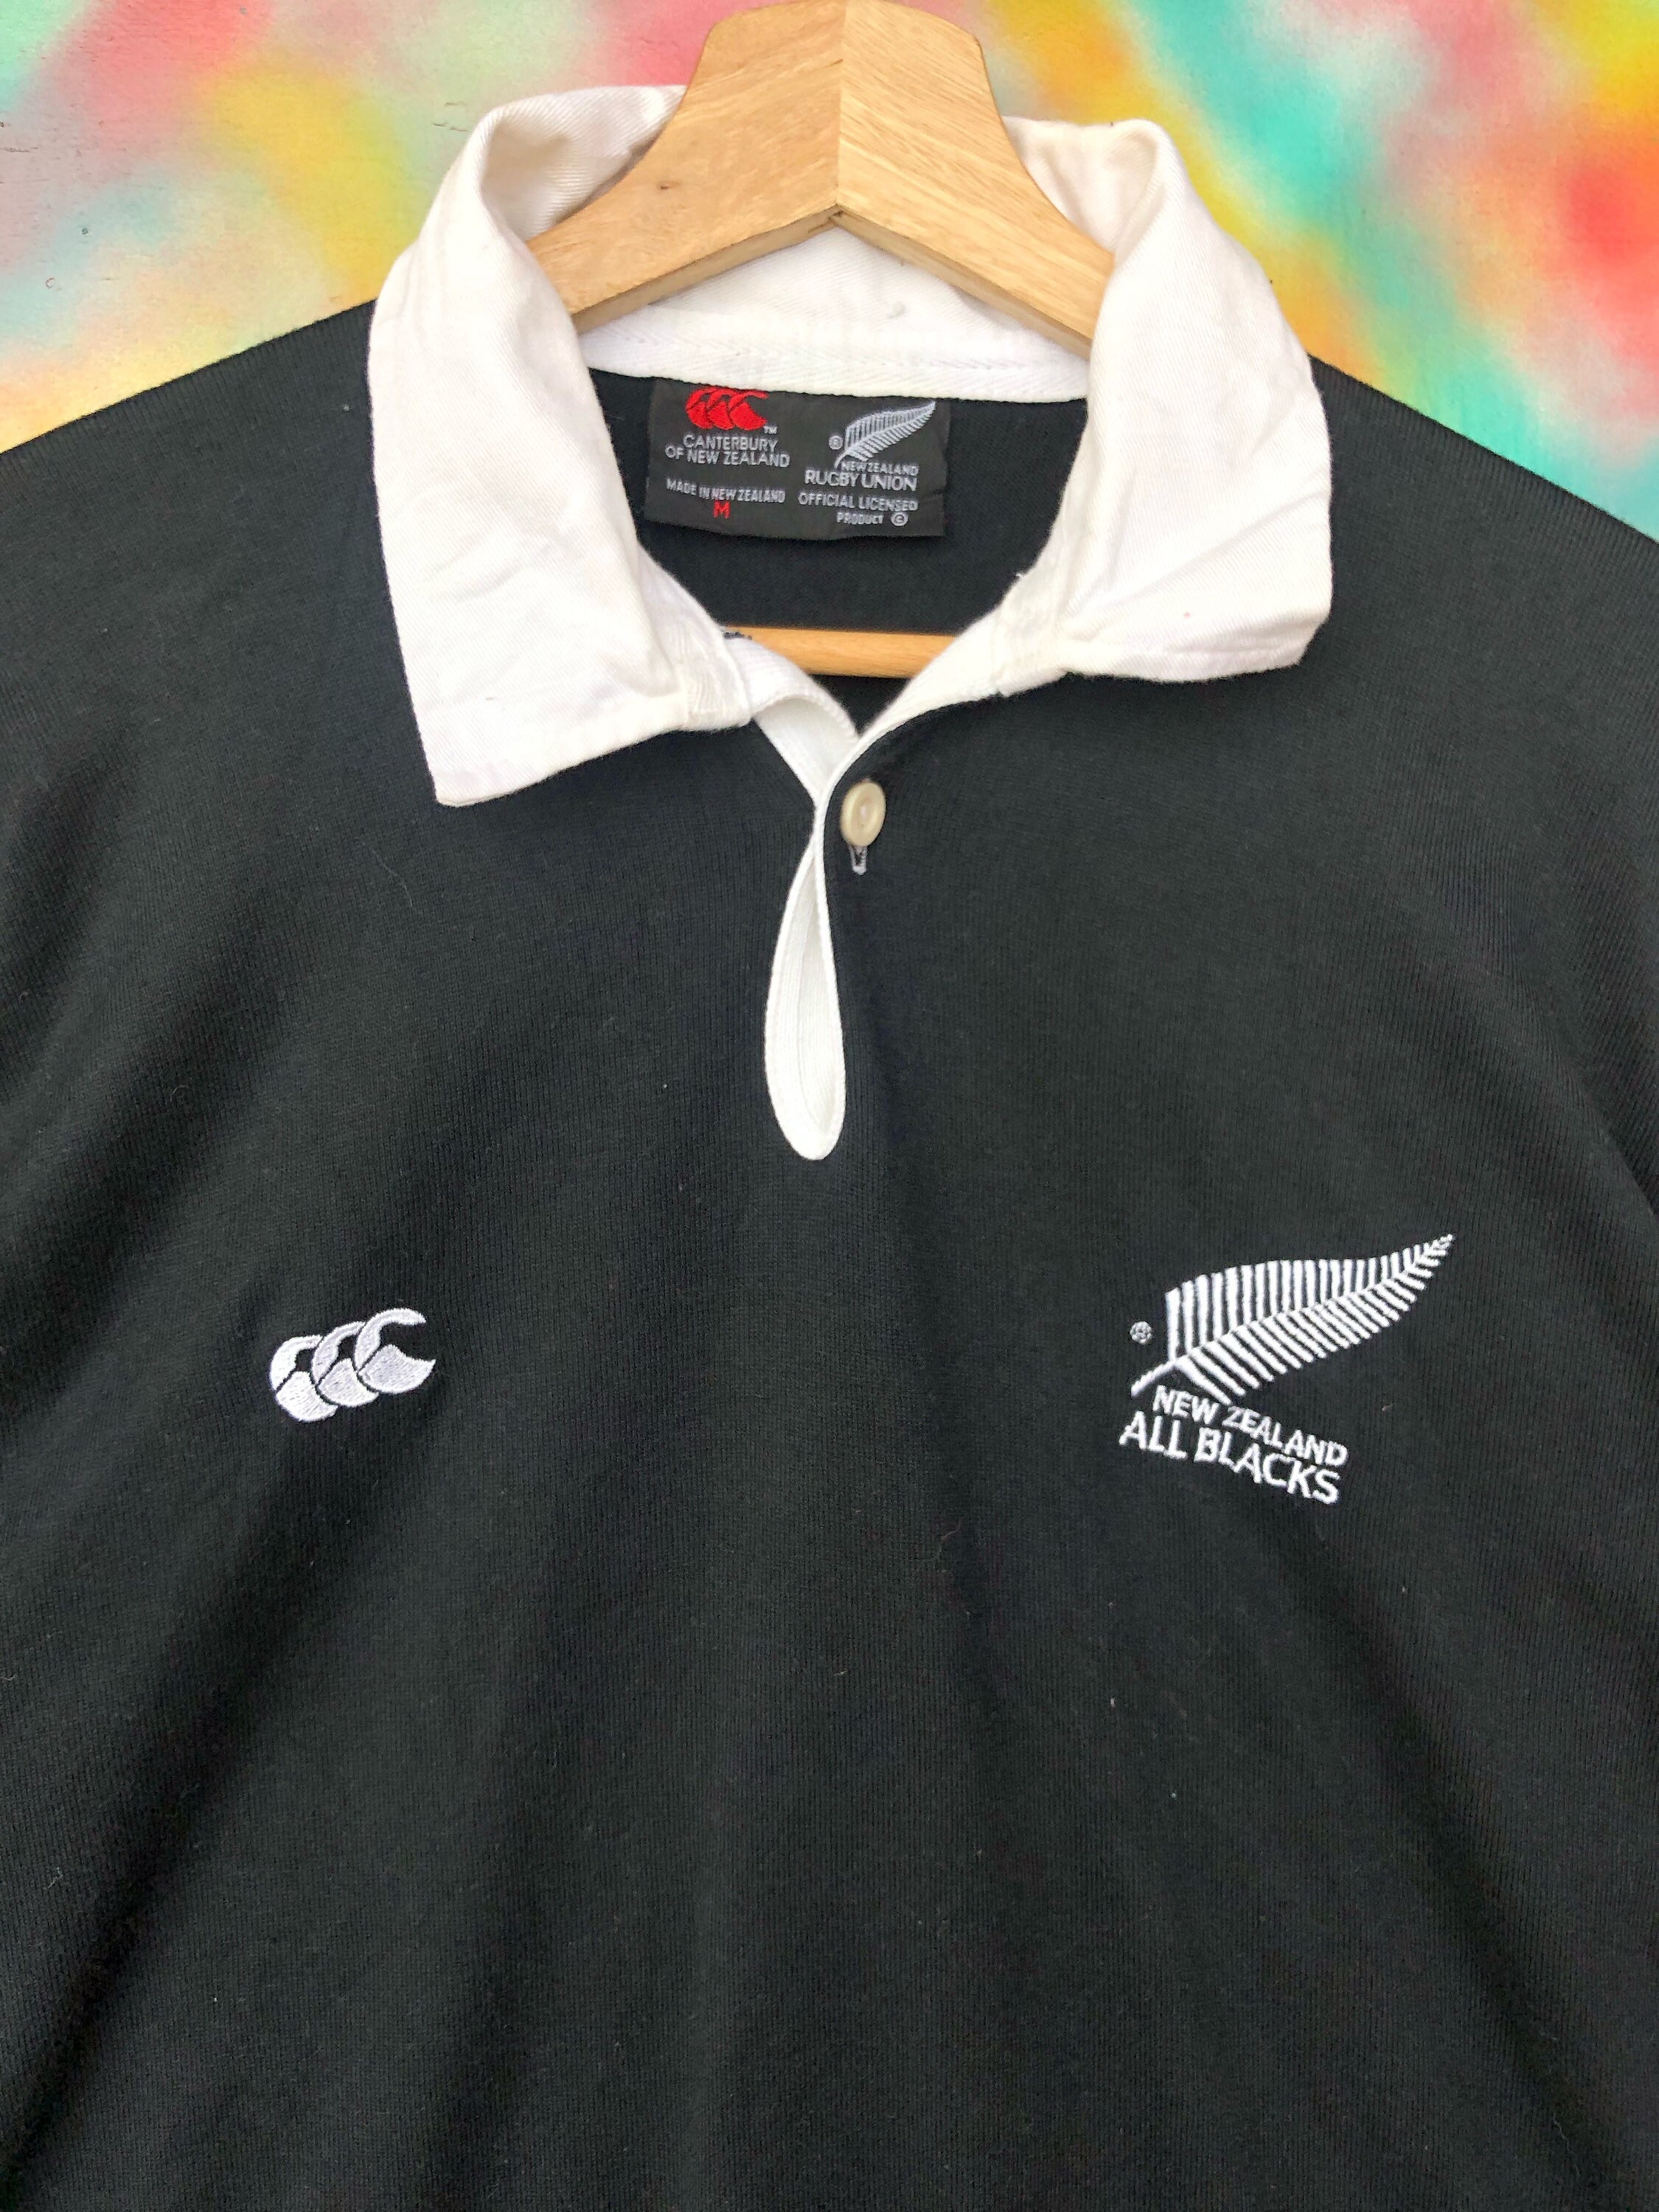 Uiterst zeldzaam! Canterbury All Blacks Sweatshirt Multicolour Collar Rugby van Nieuw-Zeeland groot logo vintage mannenkleding Steinlager League Kleding Gender-neutrale kleding volwassenen Hoodies & Sweatshirts Sweatshirts 